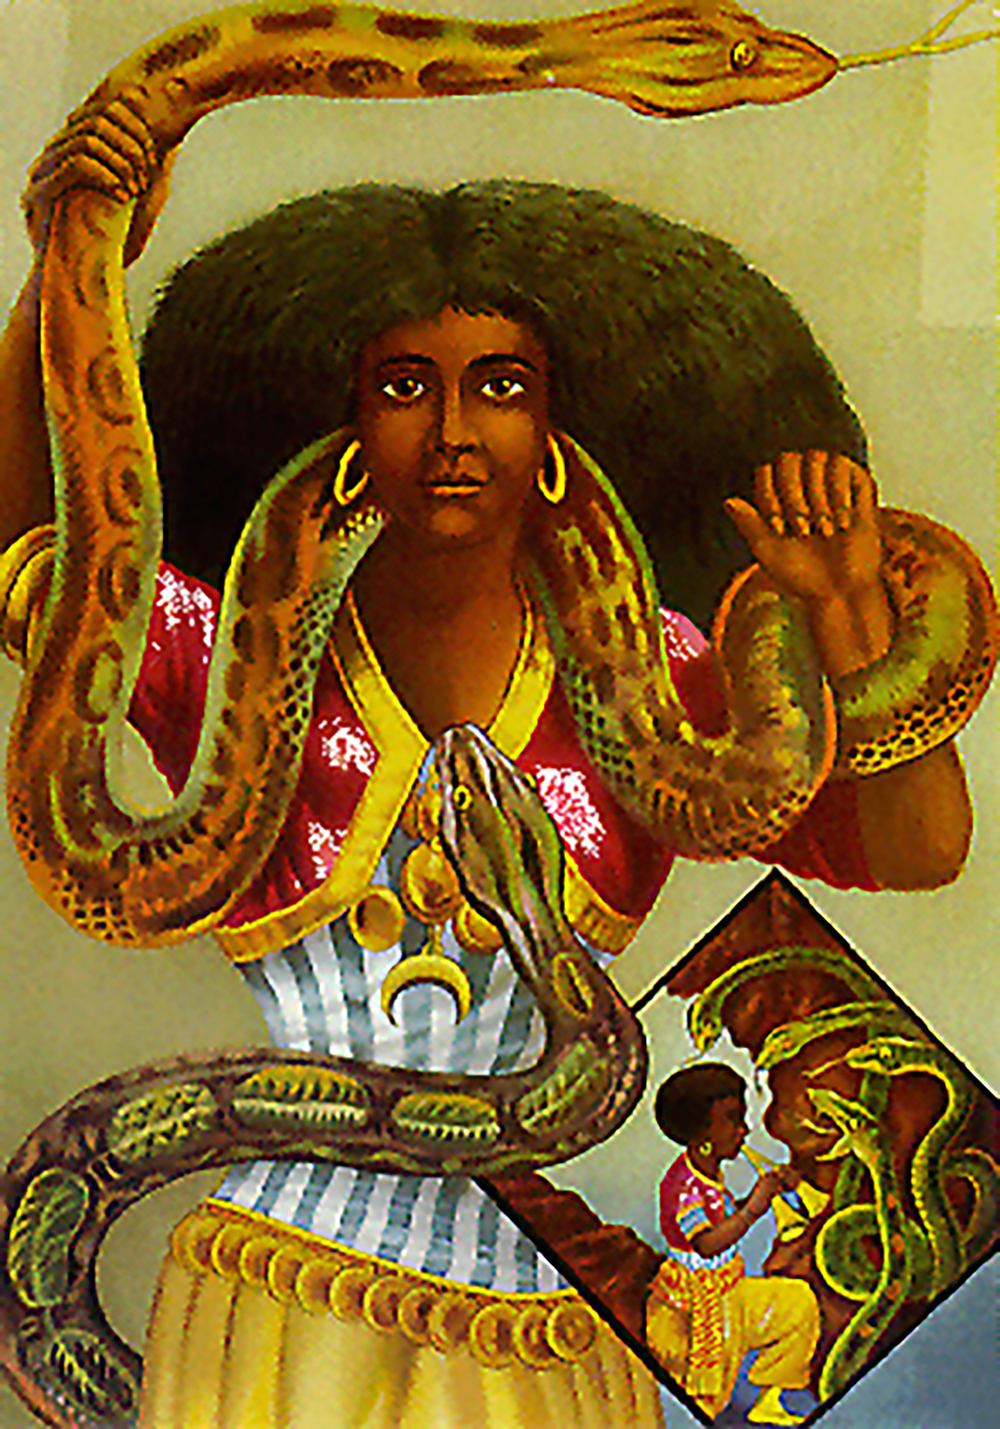 Ikke Slange-Kvinden fra det peruvianske sharanahua-folks mytologi, der er omtalt i nærværende essay, men en anden gudinde med slange-tilknytning, som også kan illustrere de tætte relationer dyr og mennesker imellem i animistiske traditioner: Mami Wata (Moder Vand) er en (som regel) kvindelig afrikansk ånd, der også dyrkes i den såkaldte afrikanske diaspora på de amerikanske kontinenter (plakat fra 1880'erne af ukendt kunstner; public domain)